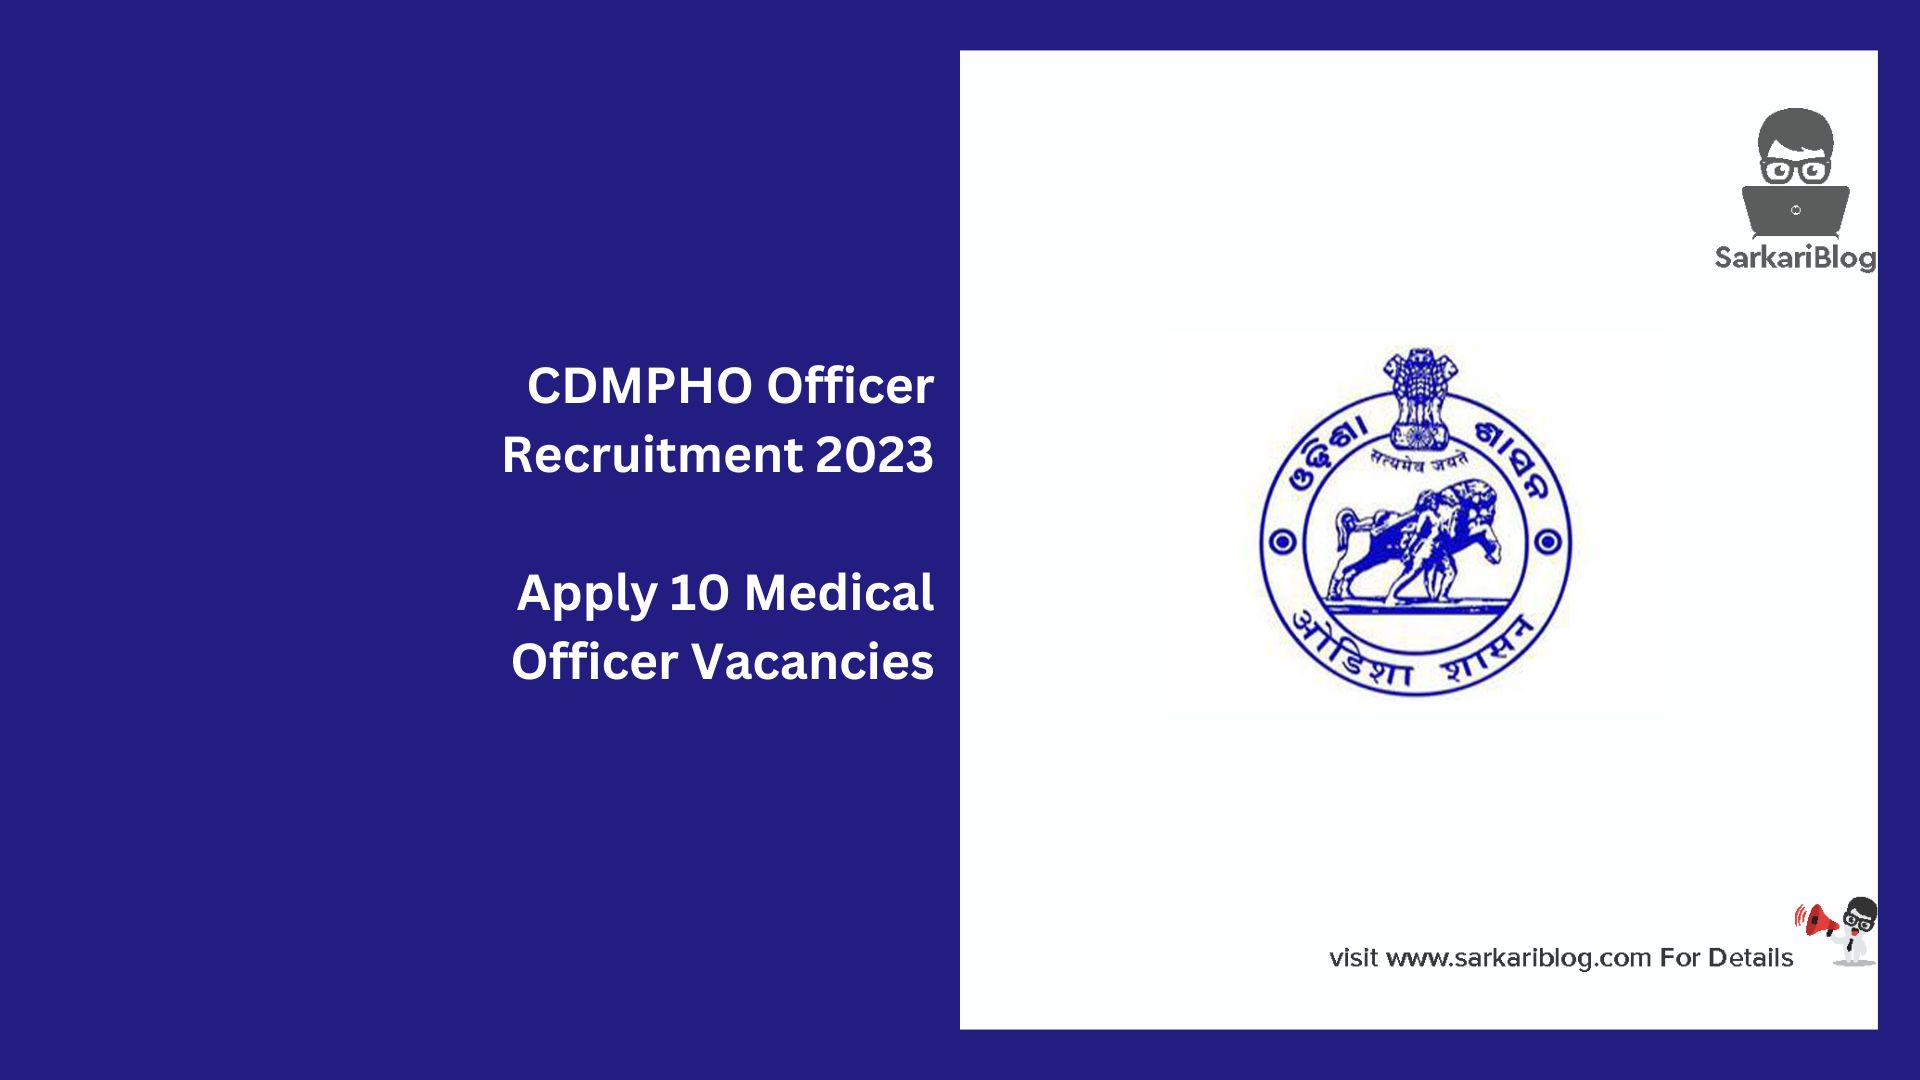 CDMPHO Officer Recruitment 2023